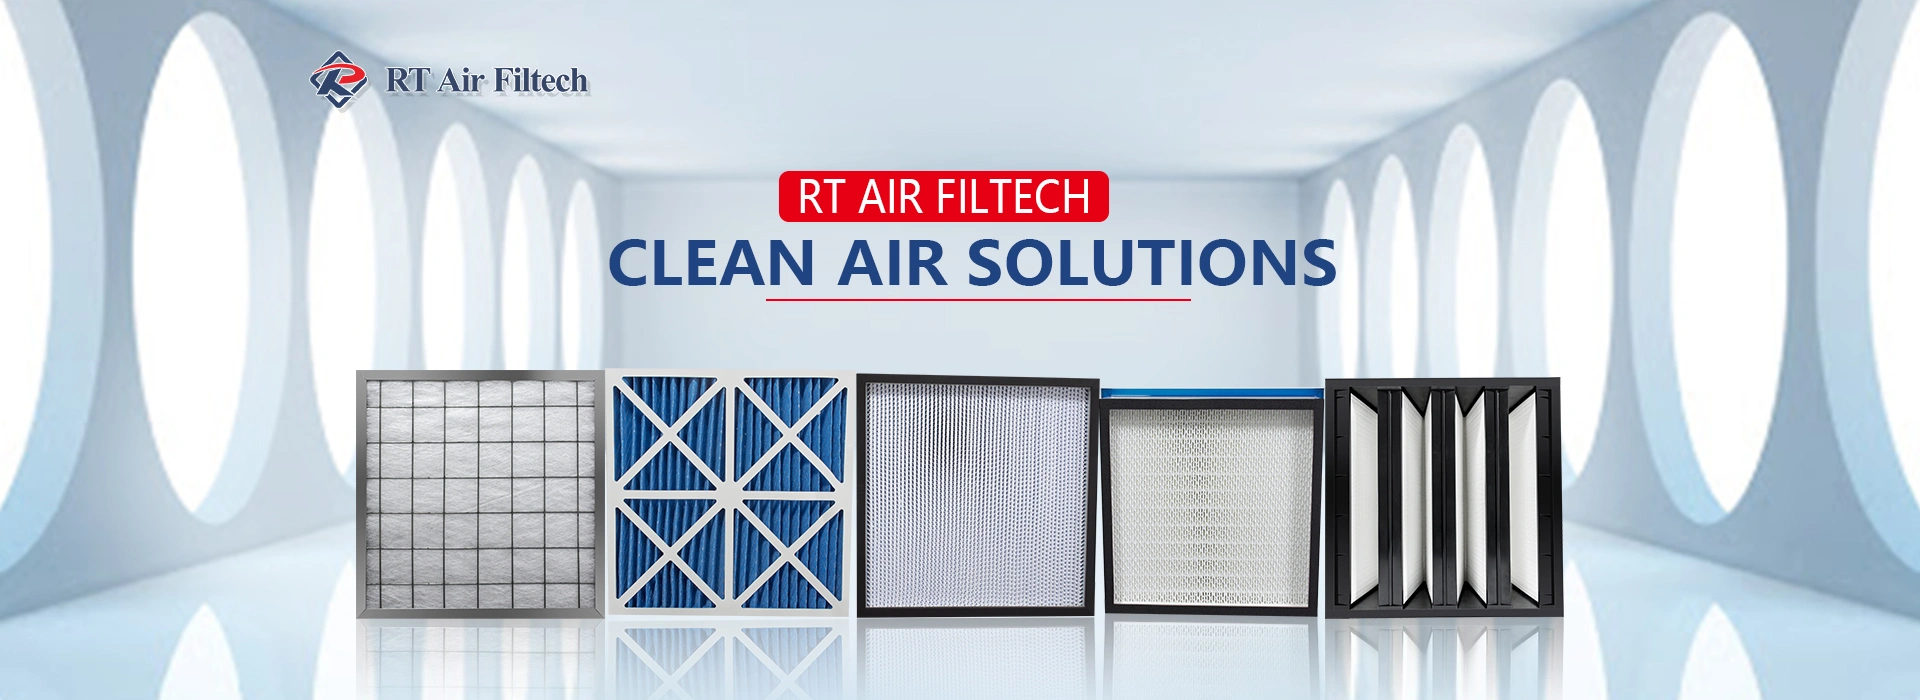 Clean air solutions